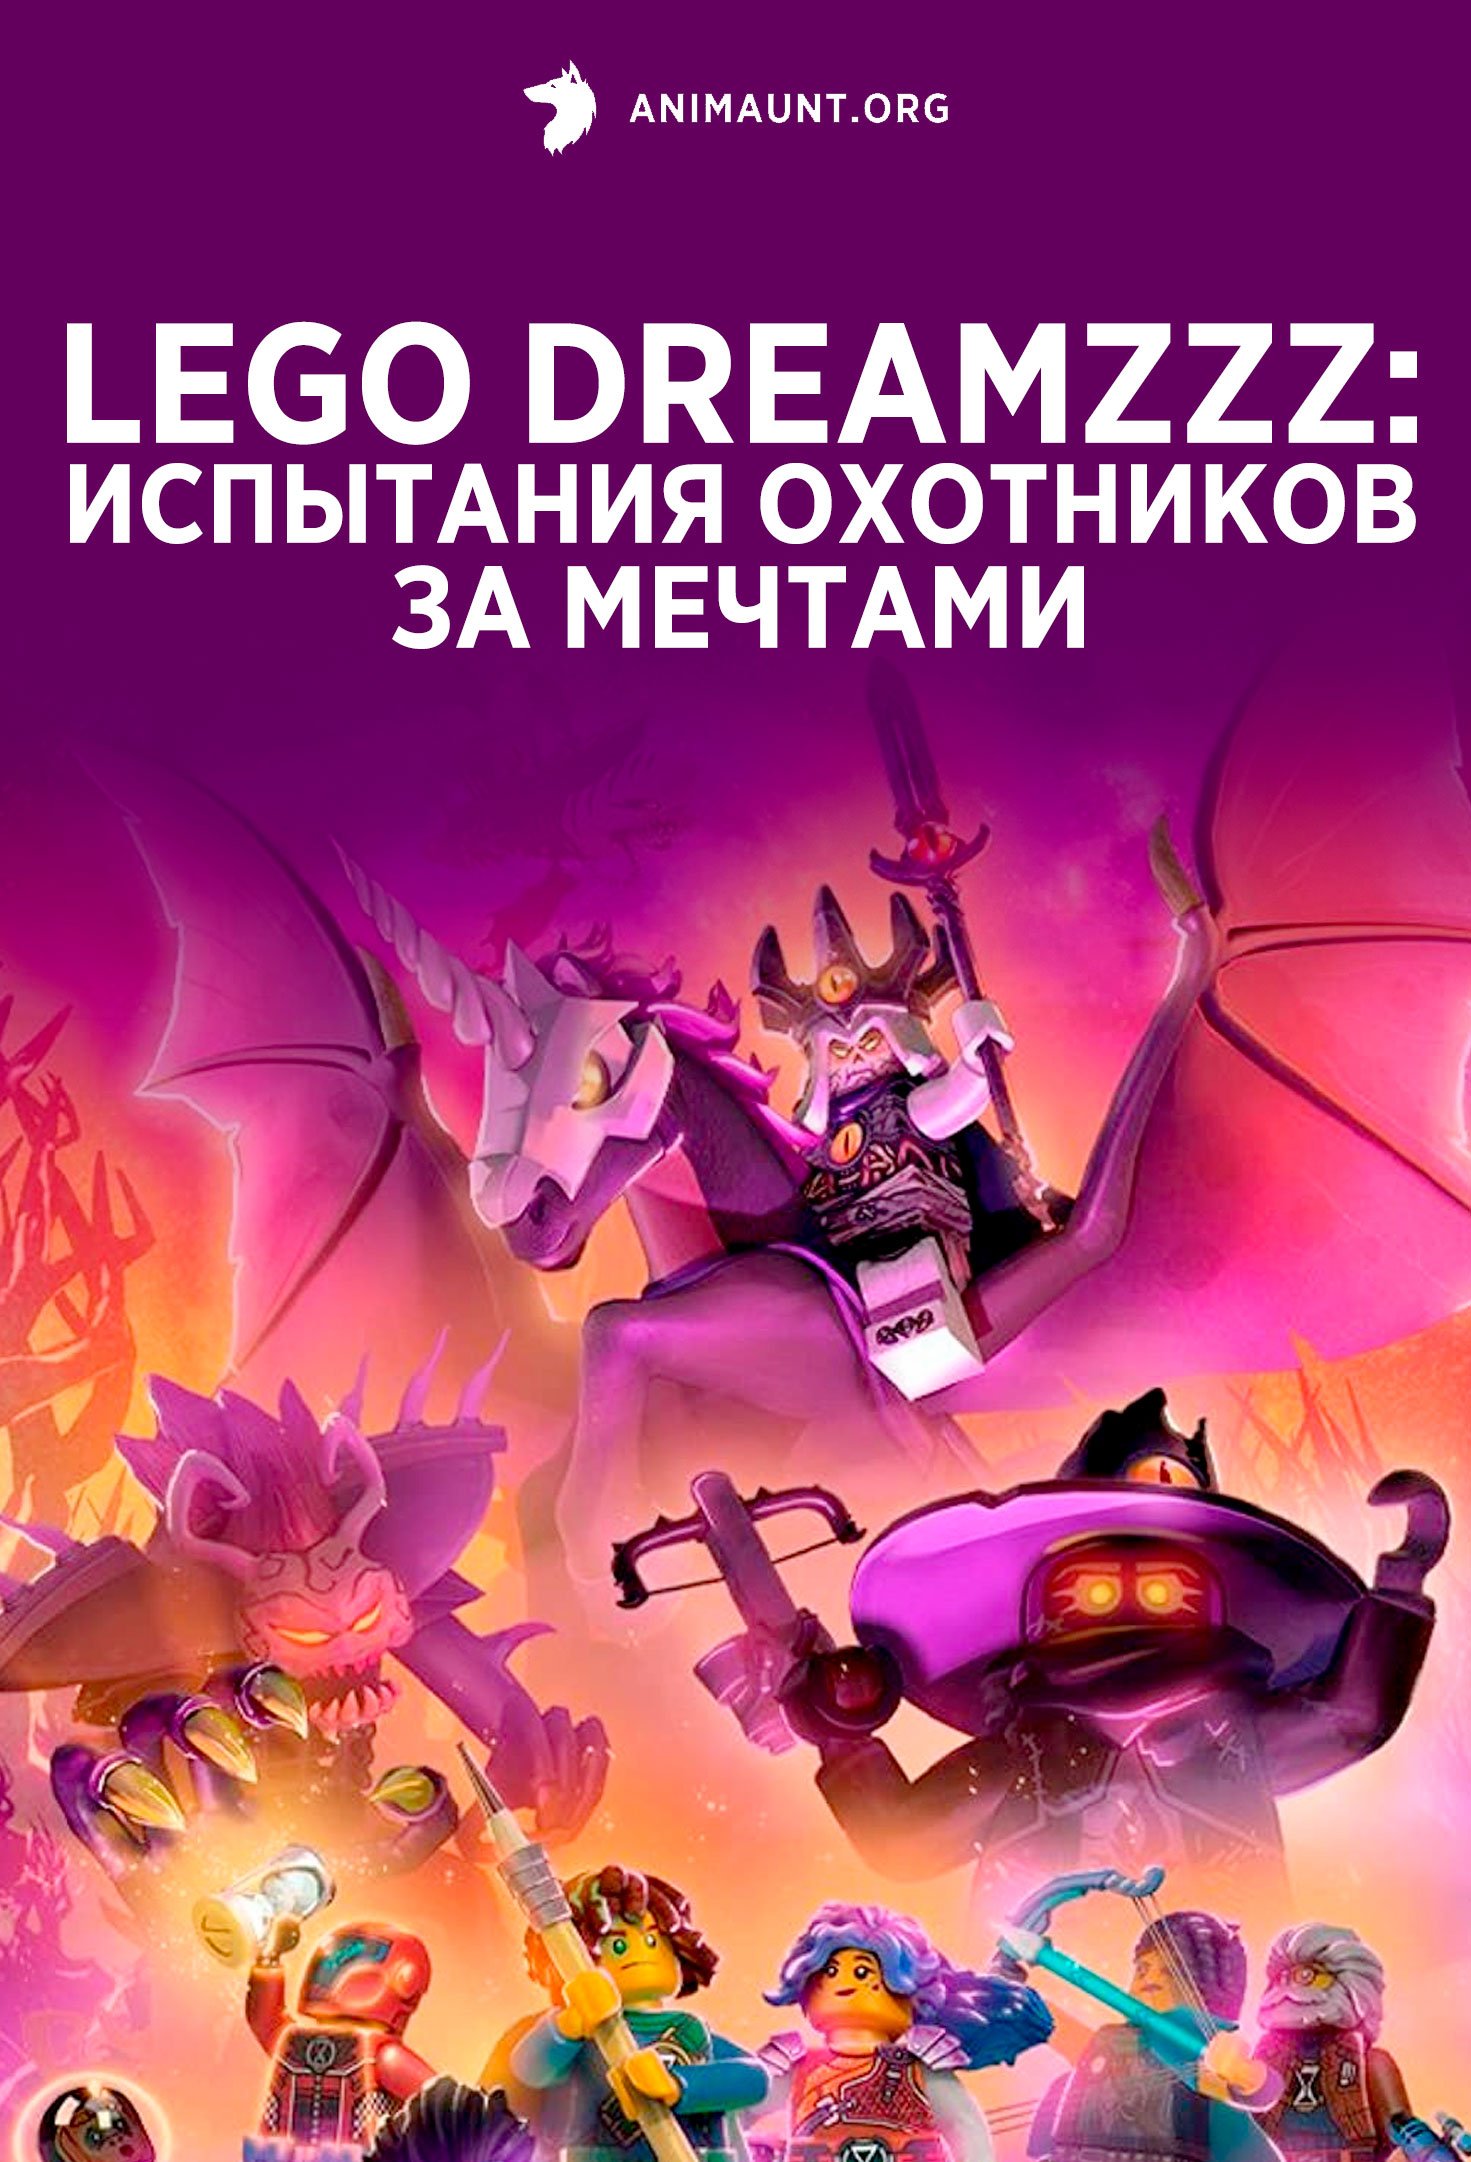 LEGO DREAMZzz: Испытание охотников за мечтами